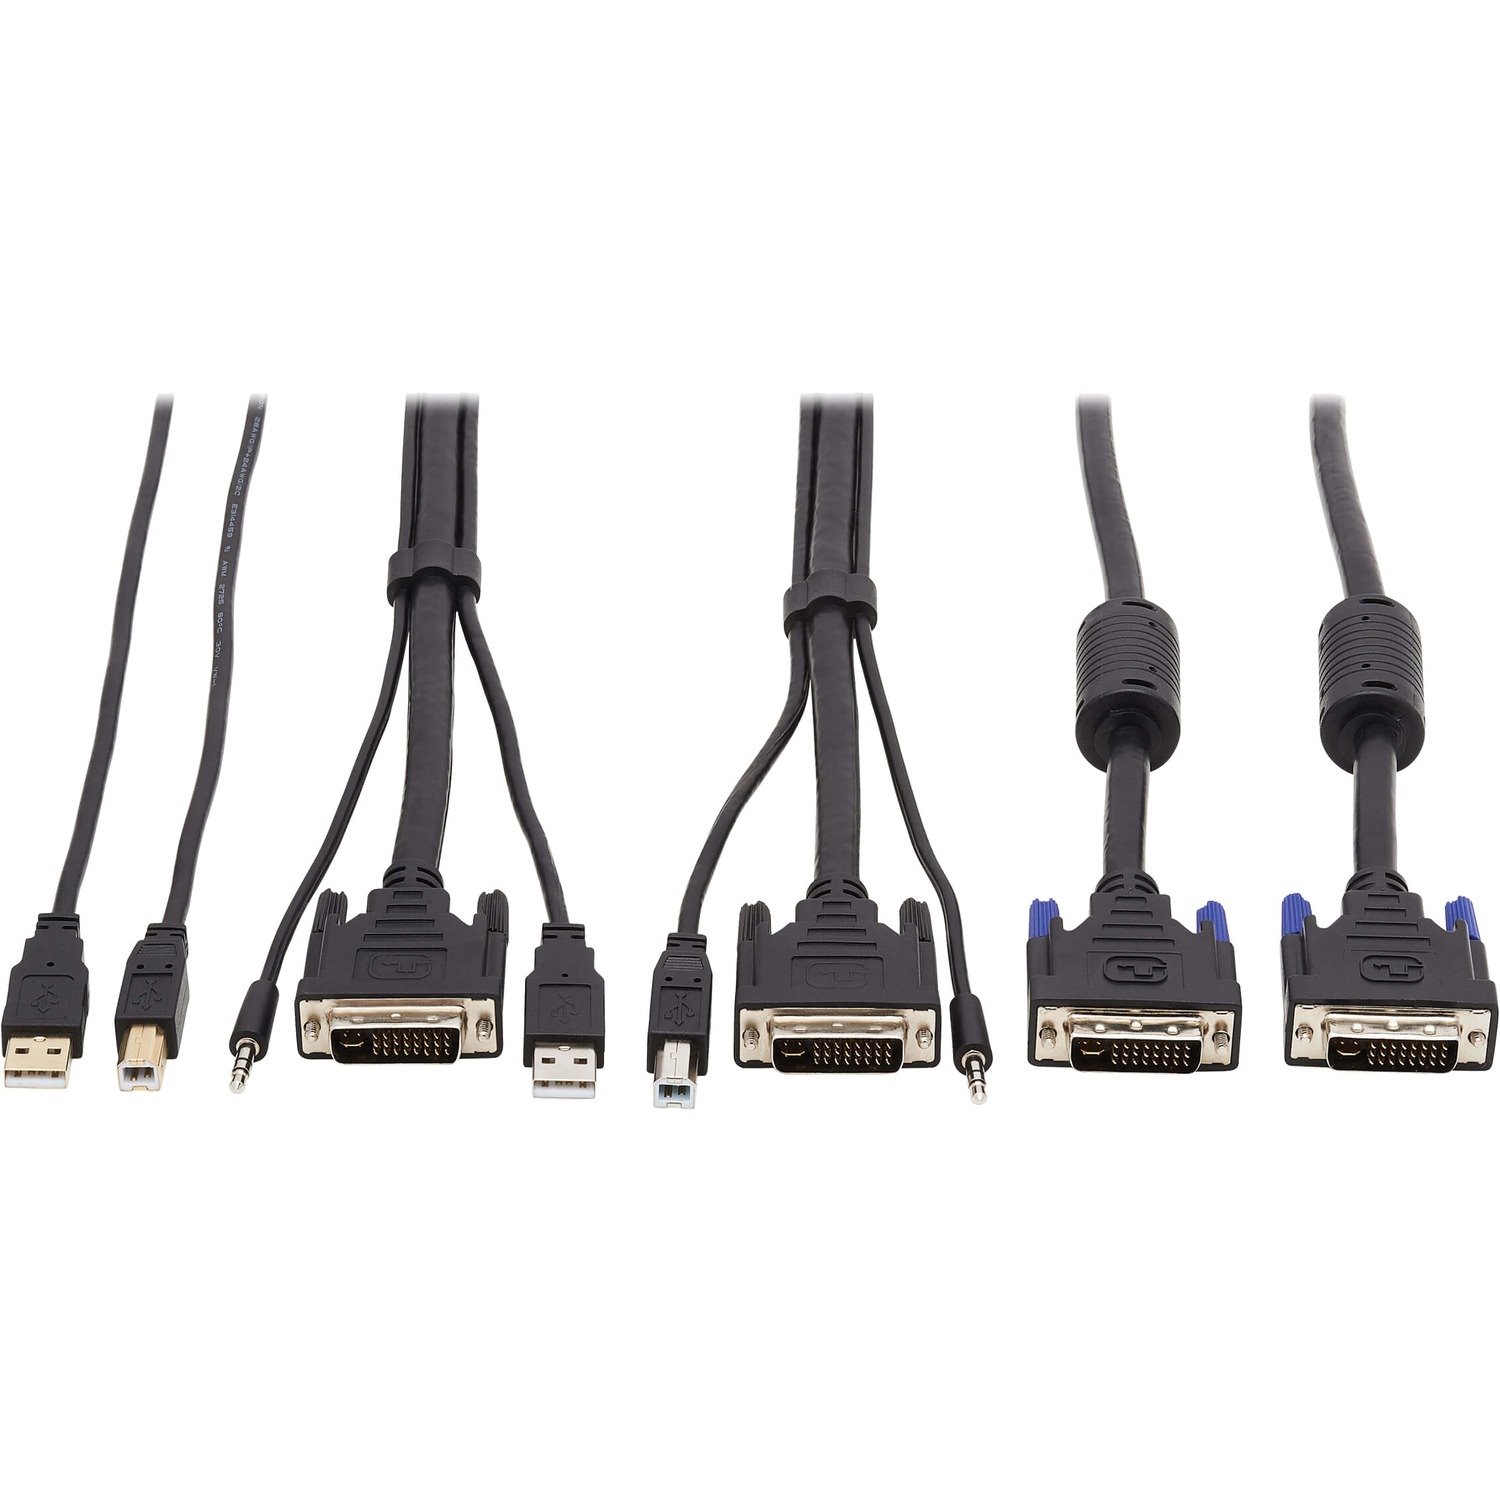 Tripp Lite by Eaton DVI KVM Cable Kit - DVI, USB, 3.5 mm Audio (3xM/3xM) + USB (M/M) + DVI (M/M), 6 ft. (1.83 m)